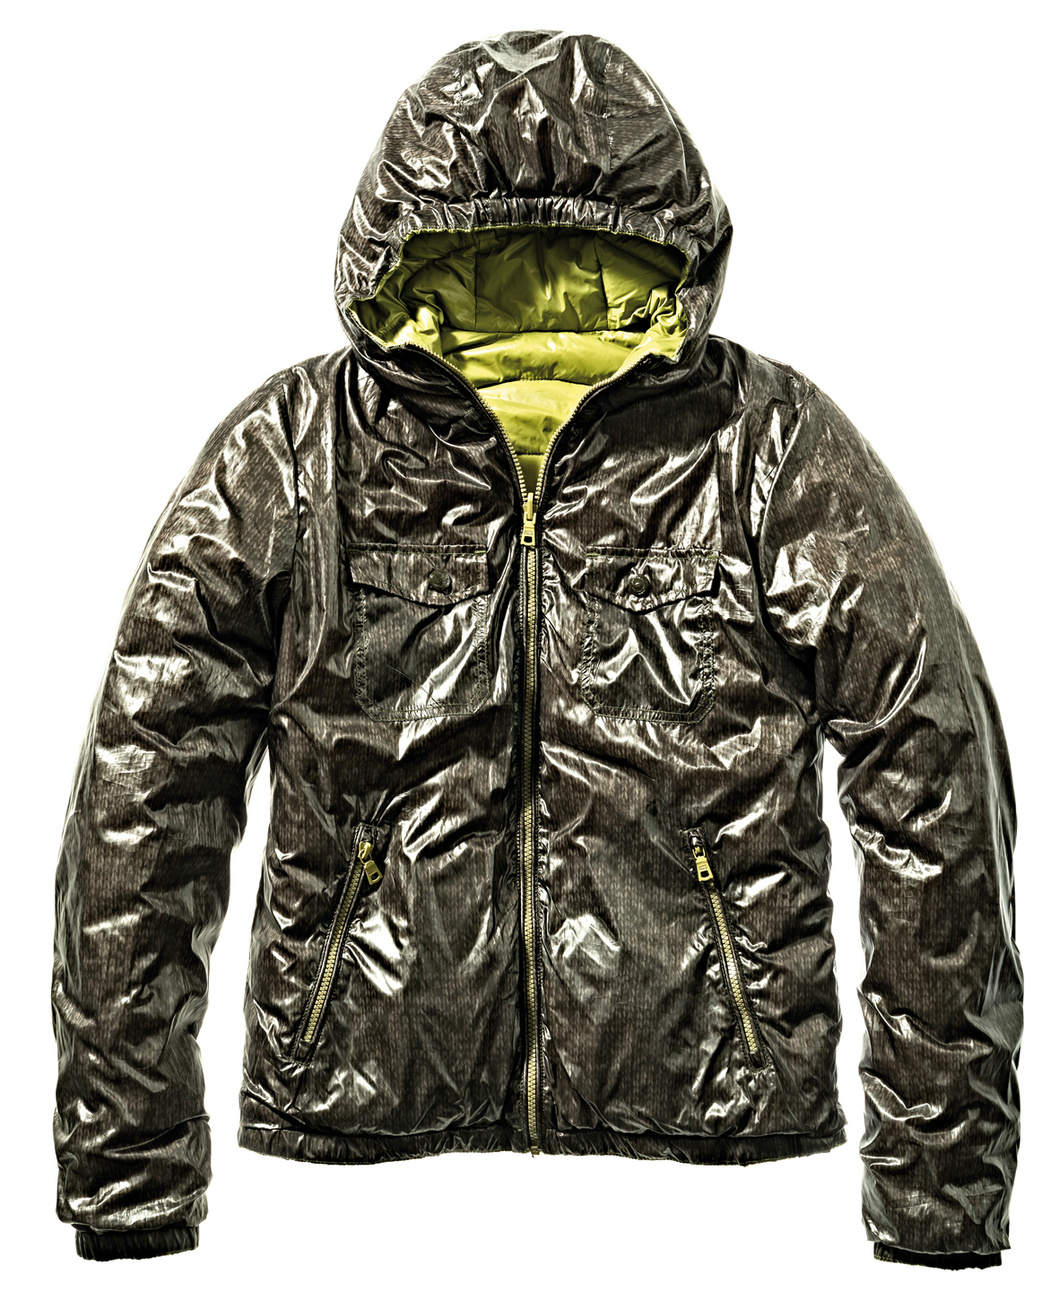 Egy jó meleg női kabát 89.900 forint.